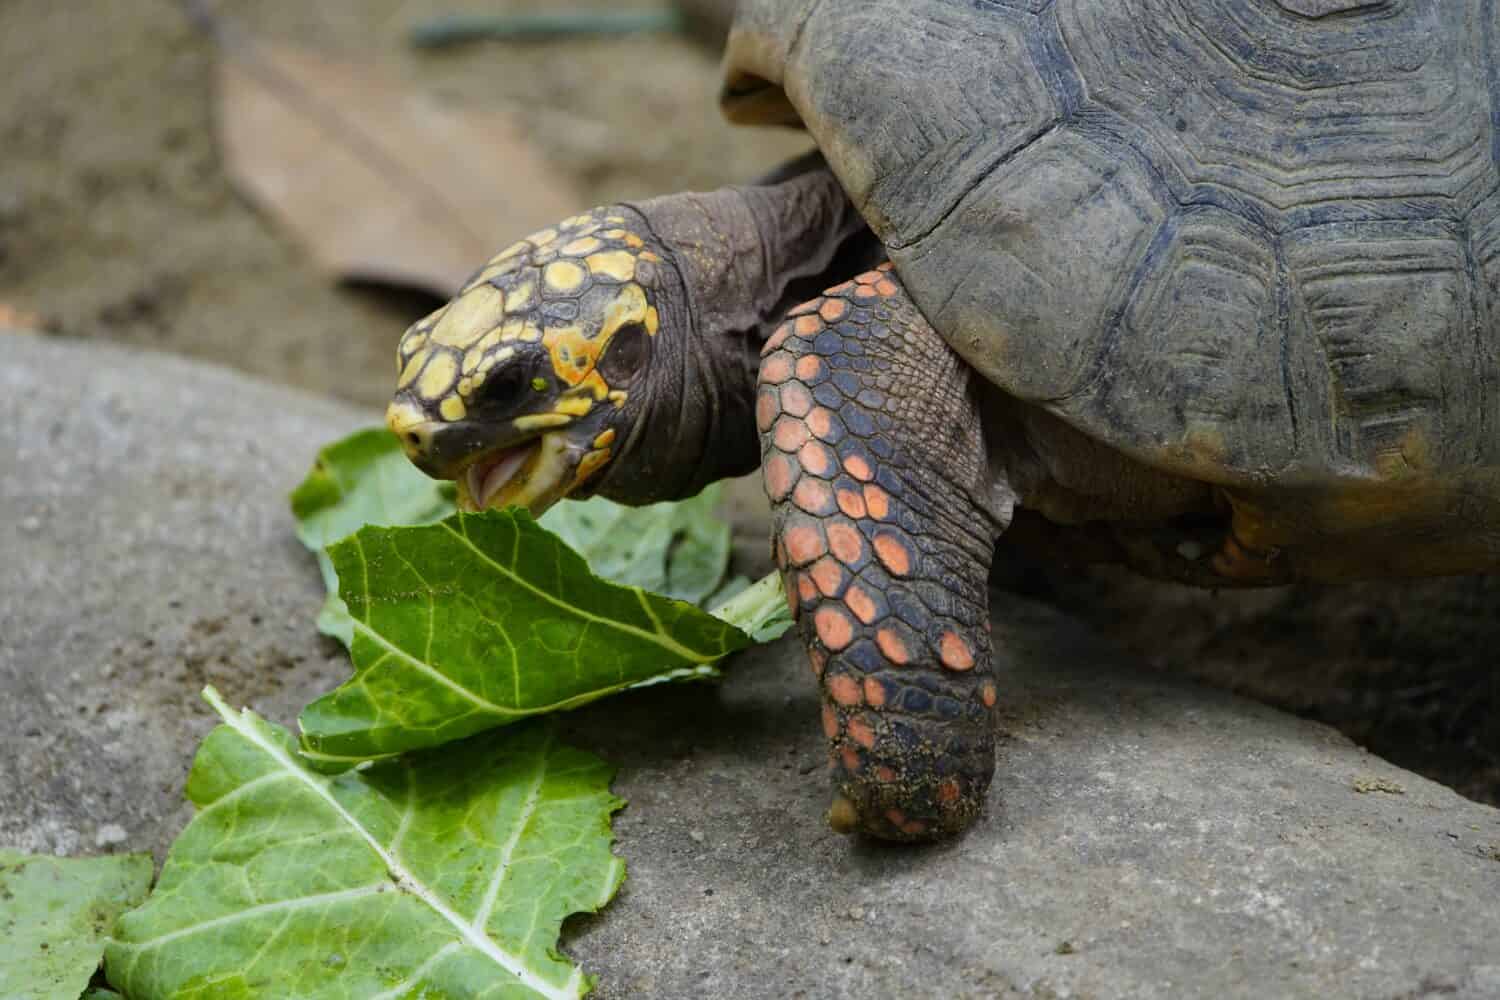 Tortoise eating fresh lettuce leaves (Chelonoidis denticulata)Testudinidae family. Manaus-Amazon, Brazil.